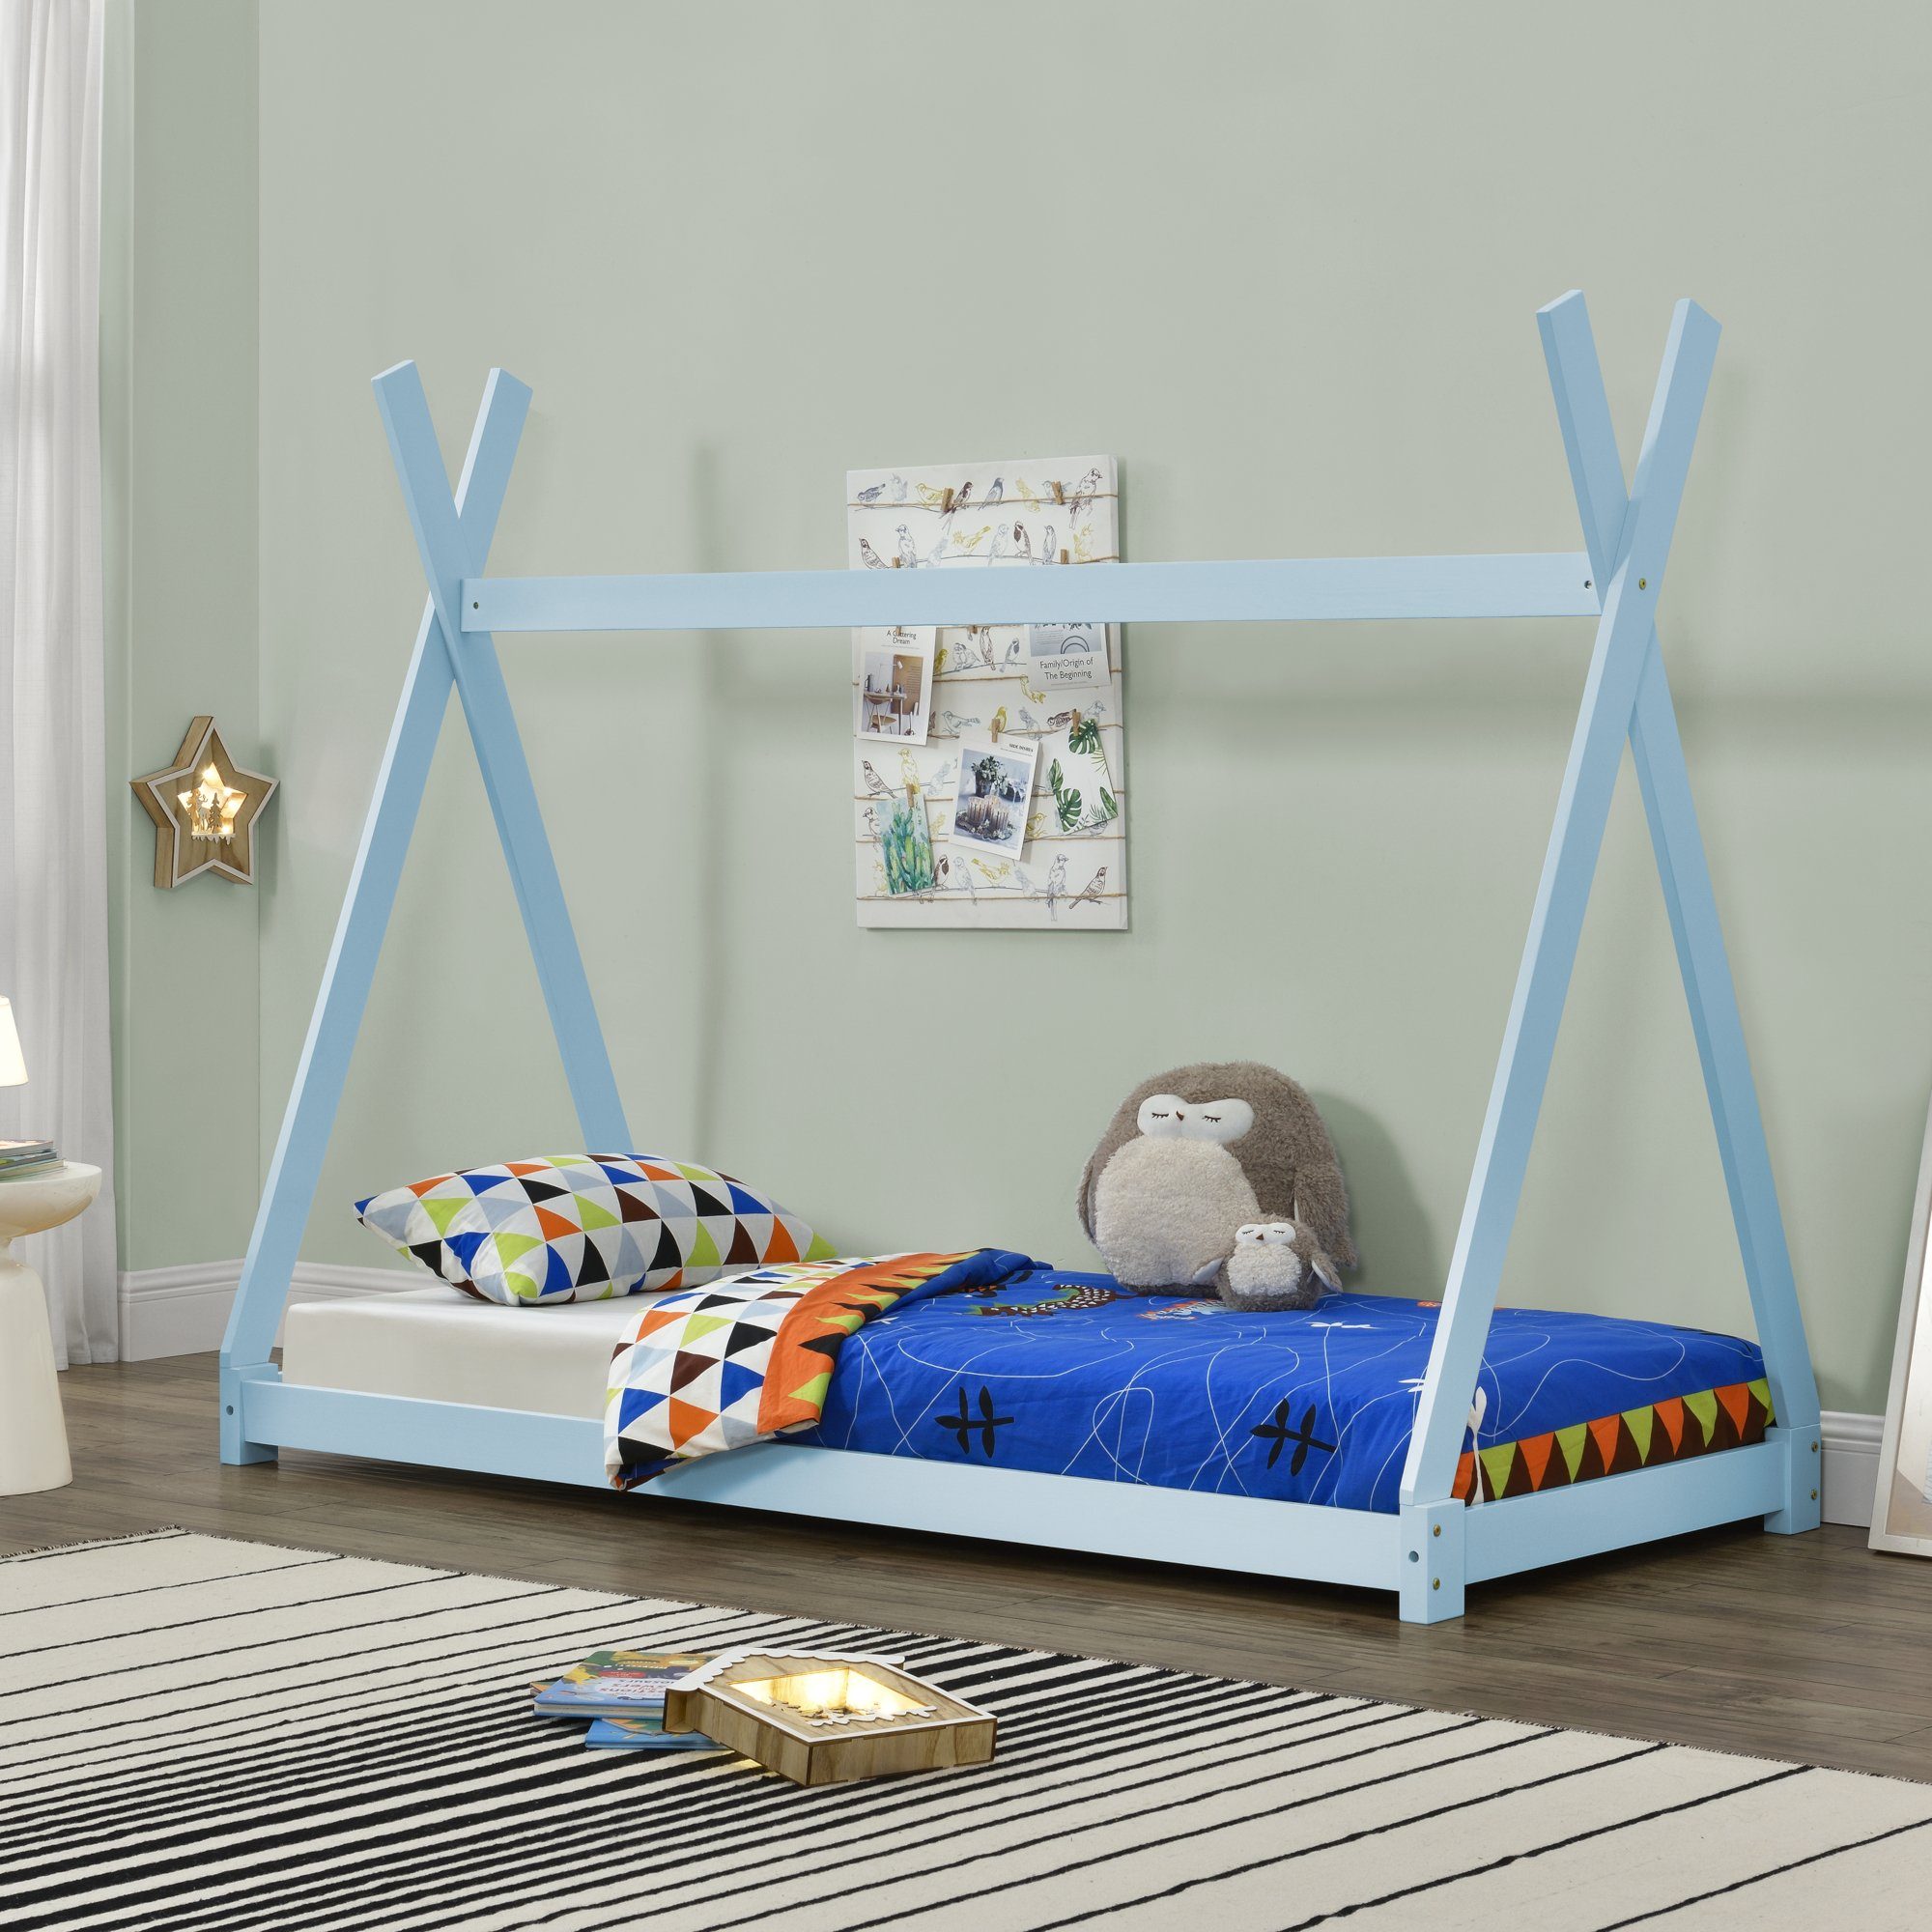 90x200cm »Onejda« Hausbett en.casa lackiert Kiefernholz Kinderbett, blau aus in